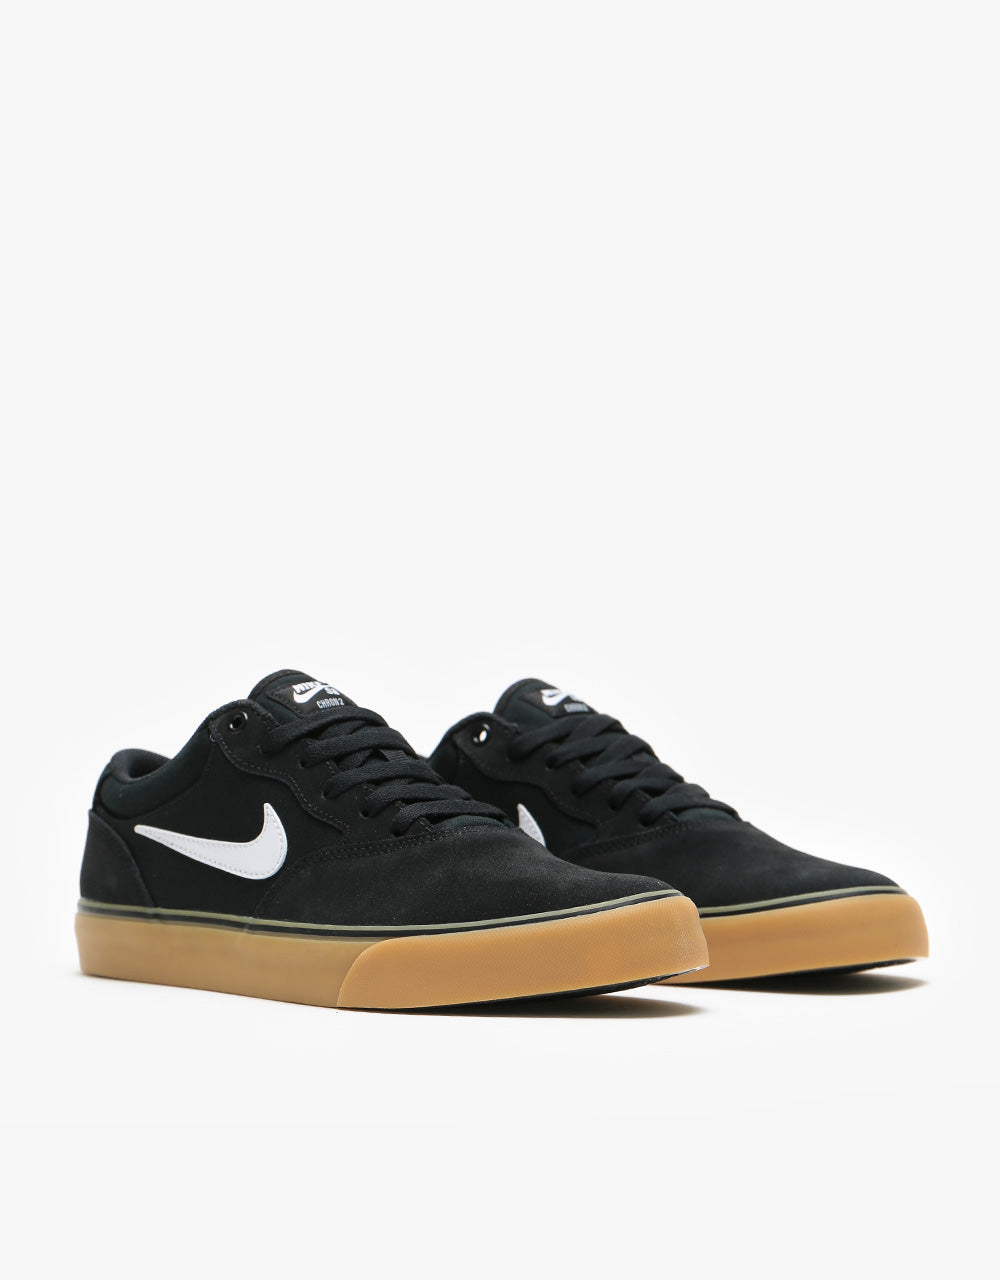 Nike SB Chron 2 Skate Shoes - Black/White-Black-Gum Light Brown